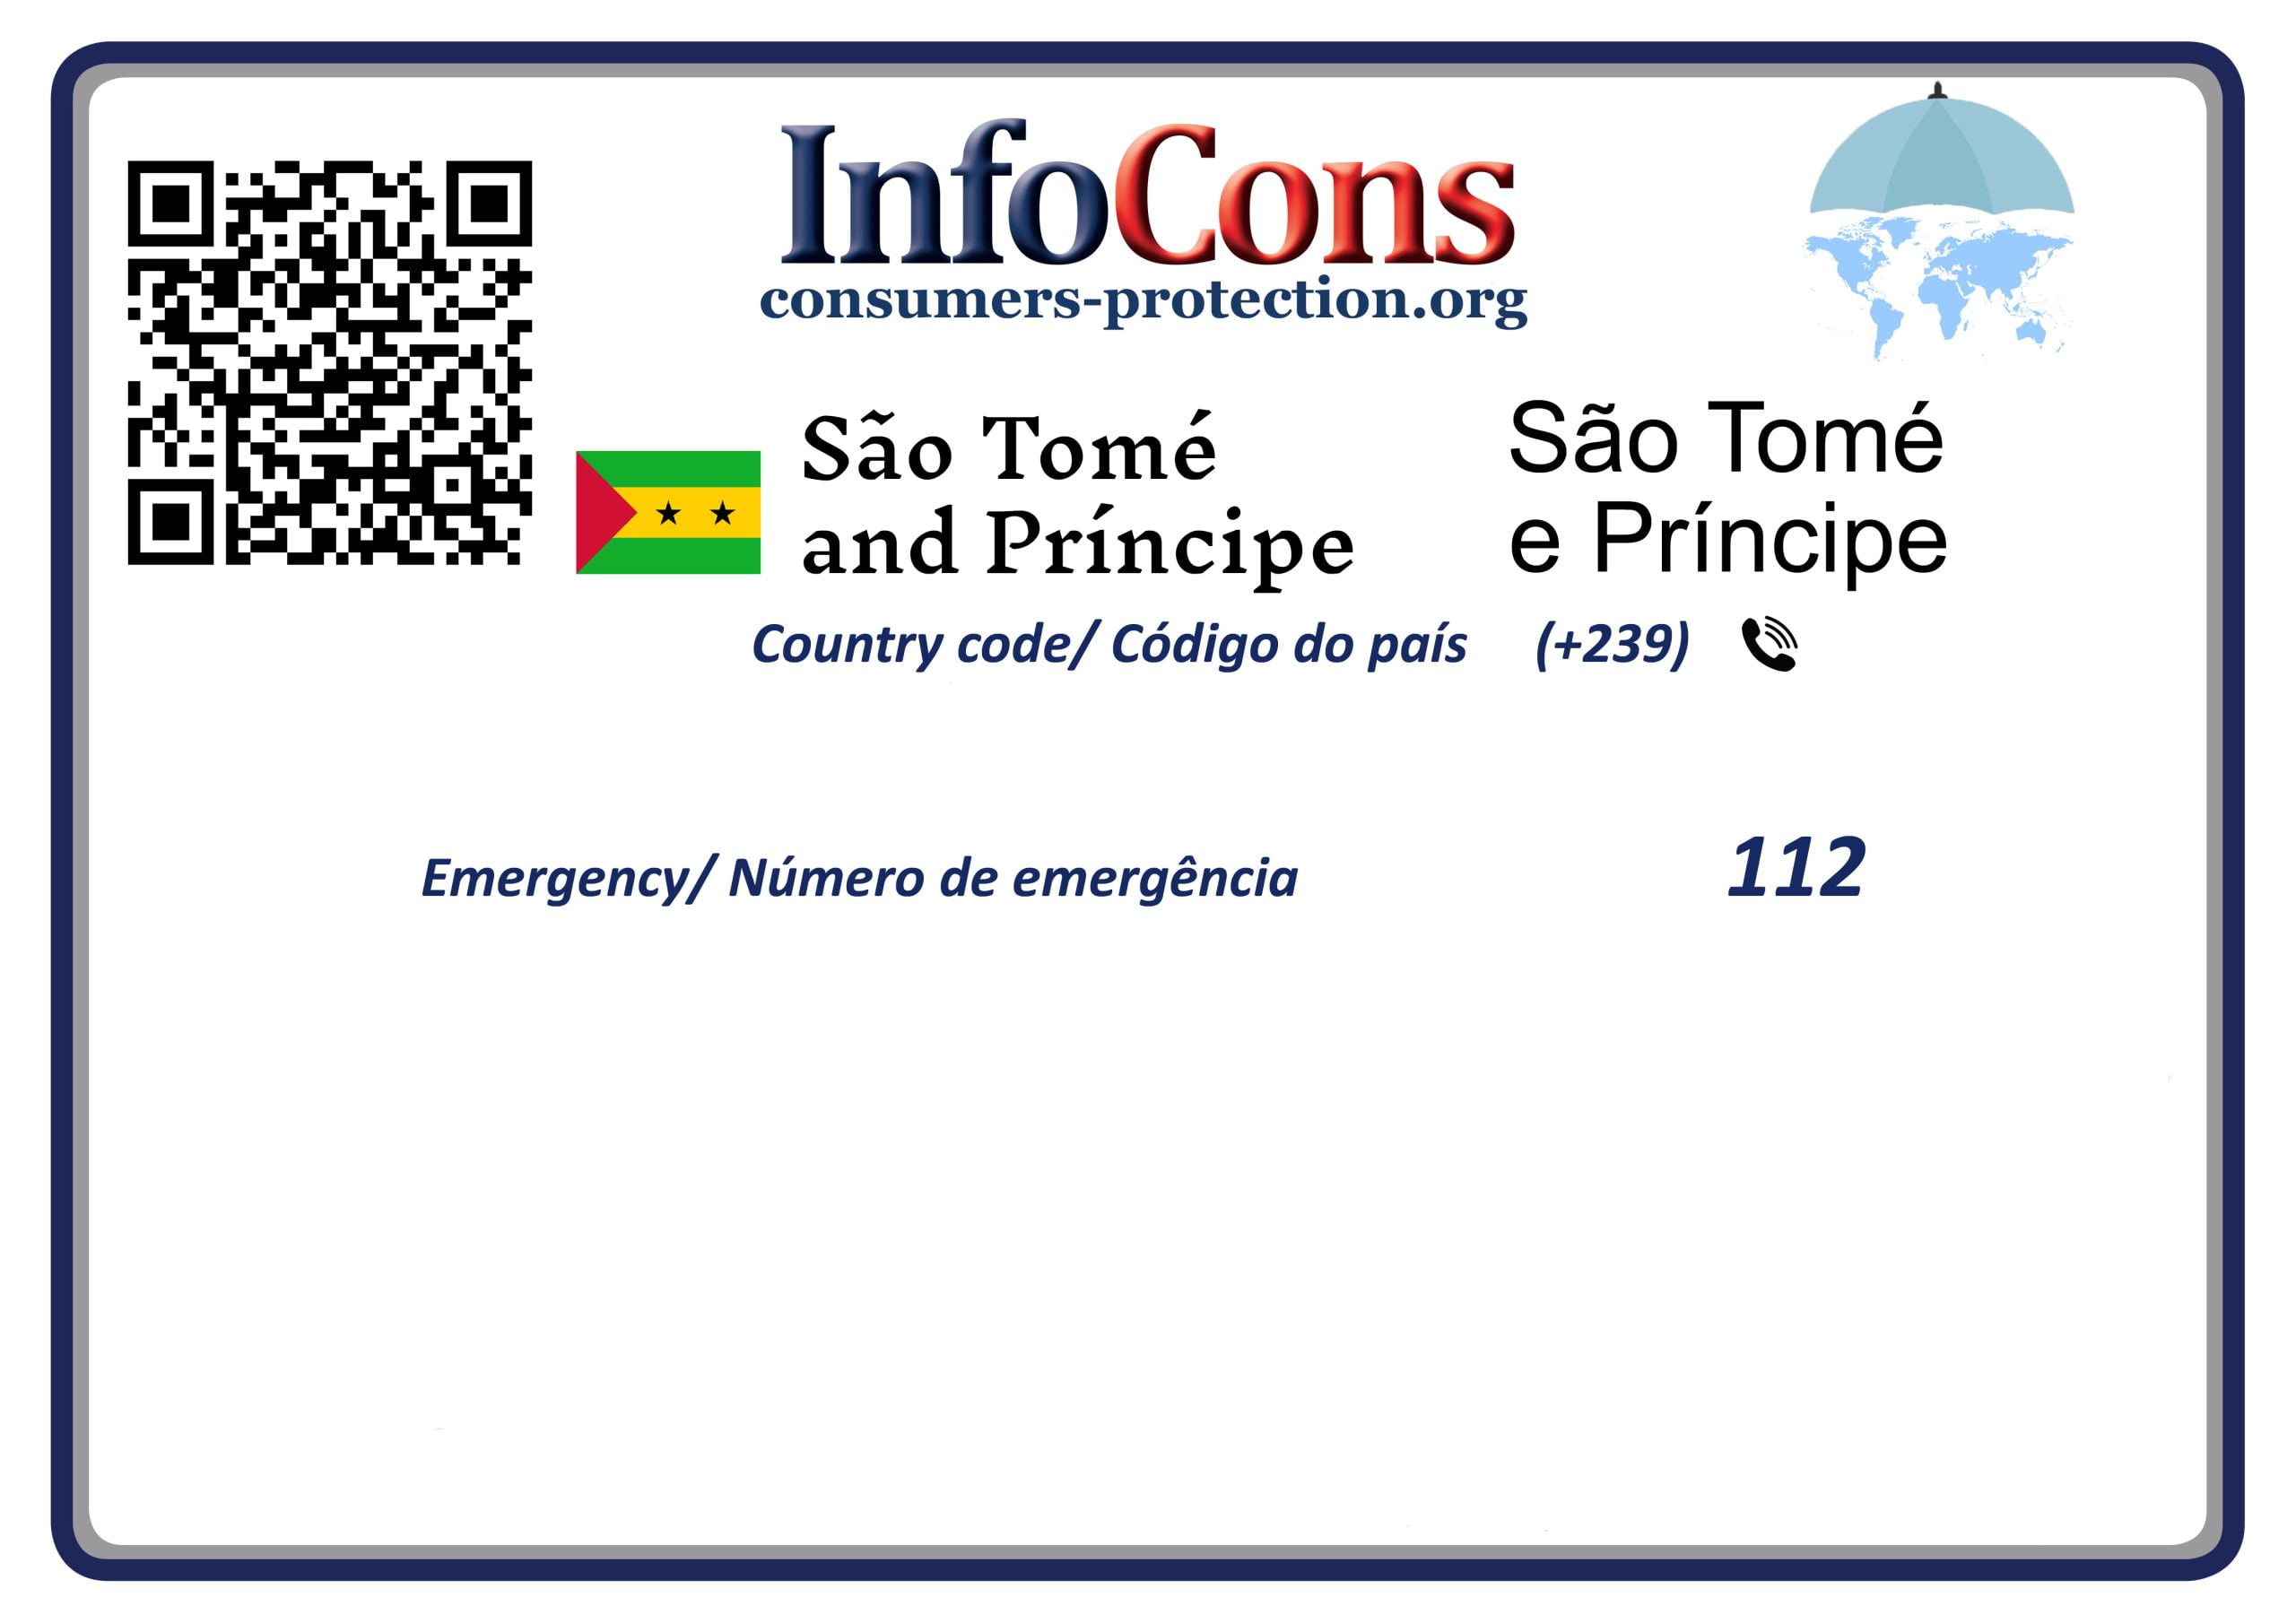 Defesa do Consumidor São Tomé e Príncipe - Consumers Protection Sao Tome and Principe